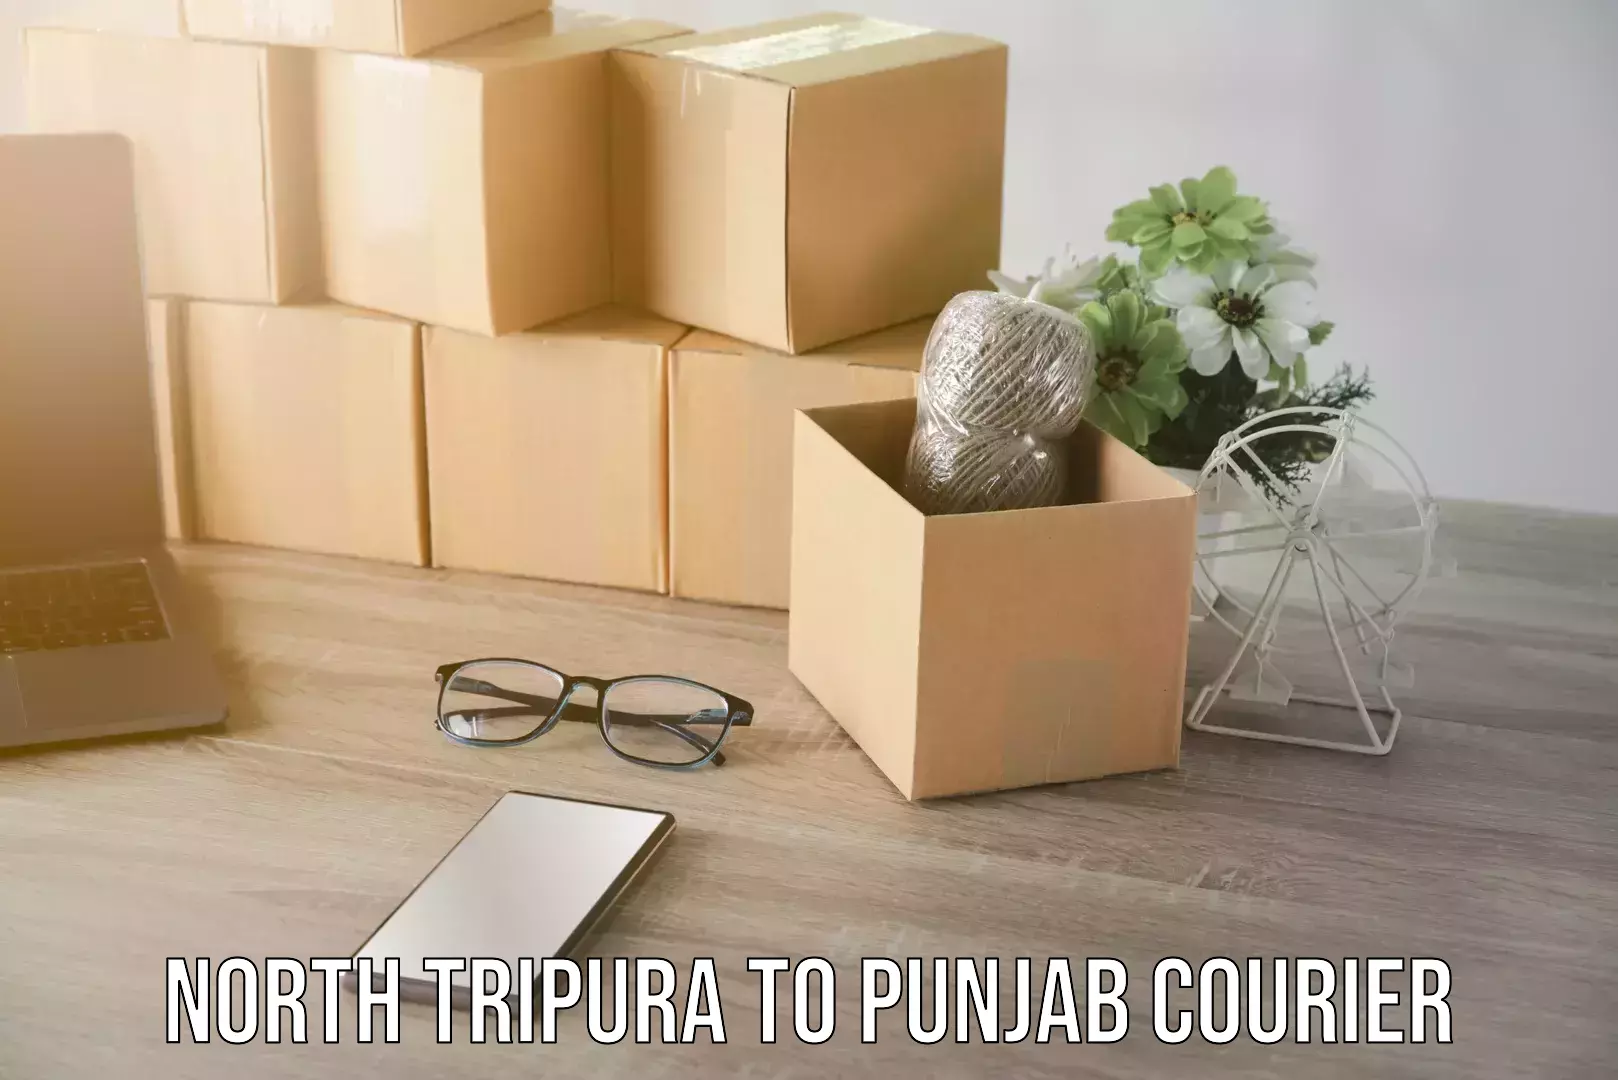 Door-to-door shipment North Tripura to Punjab